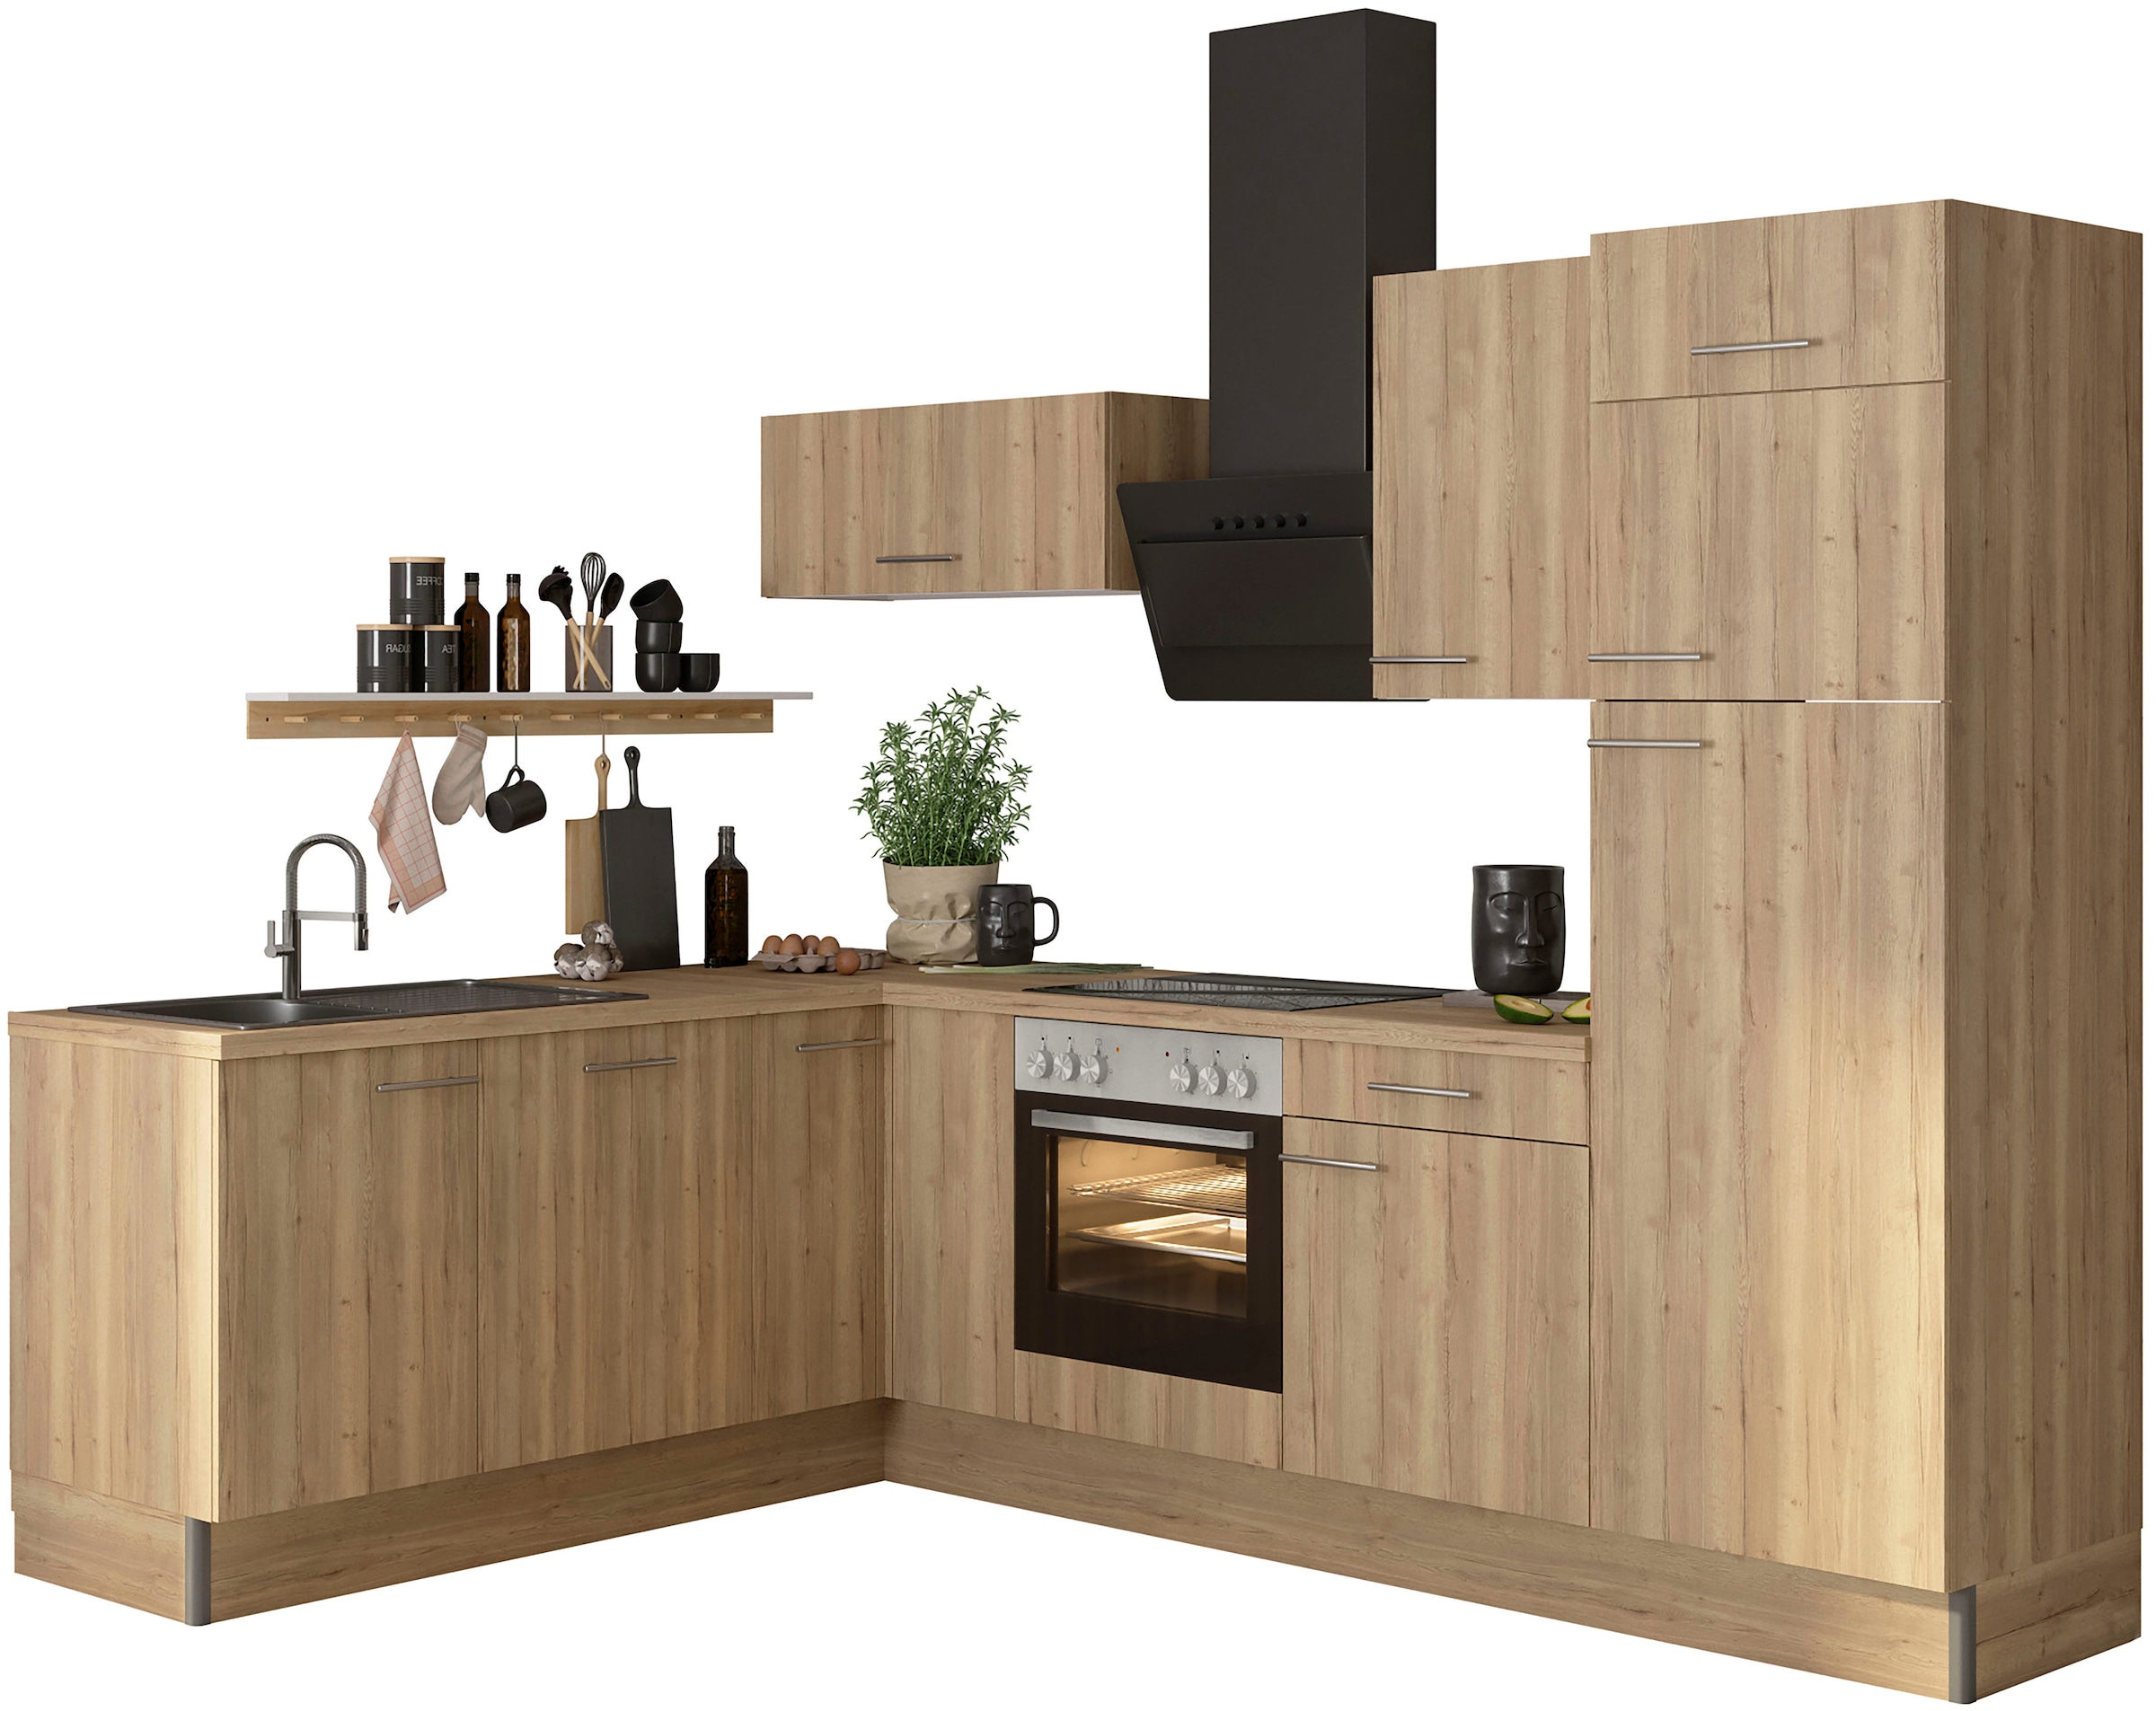 OPTIFIT Küche »Klara«, 200 x 270 cm breit, wahlweise mit E-Geräten